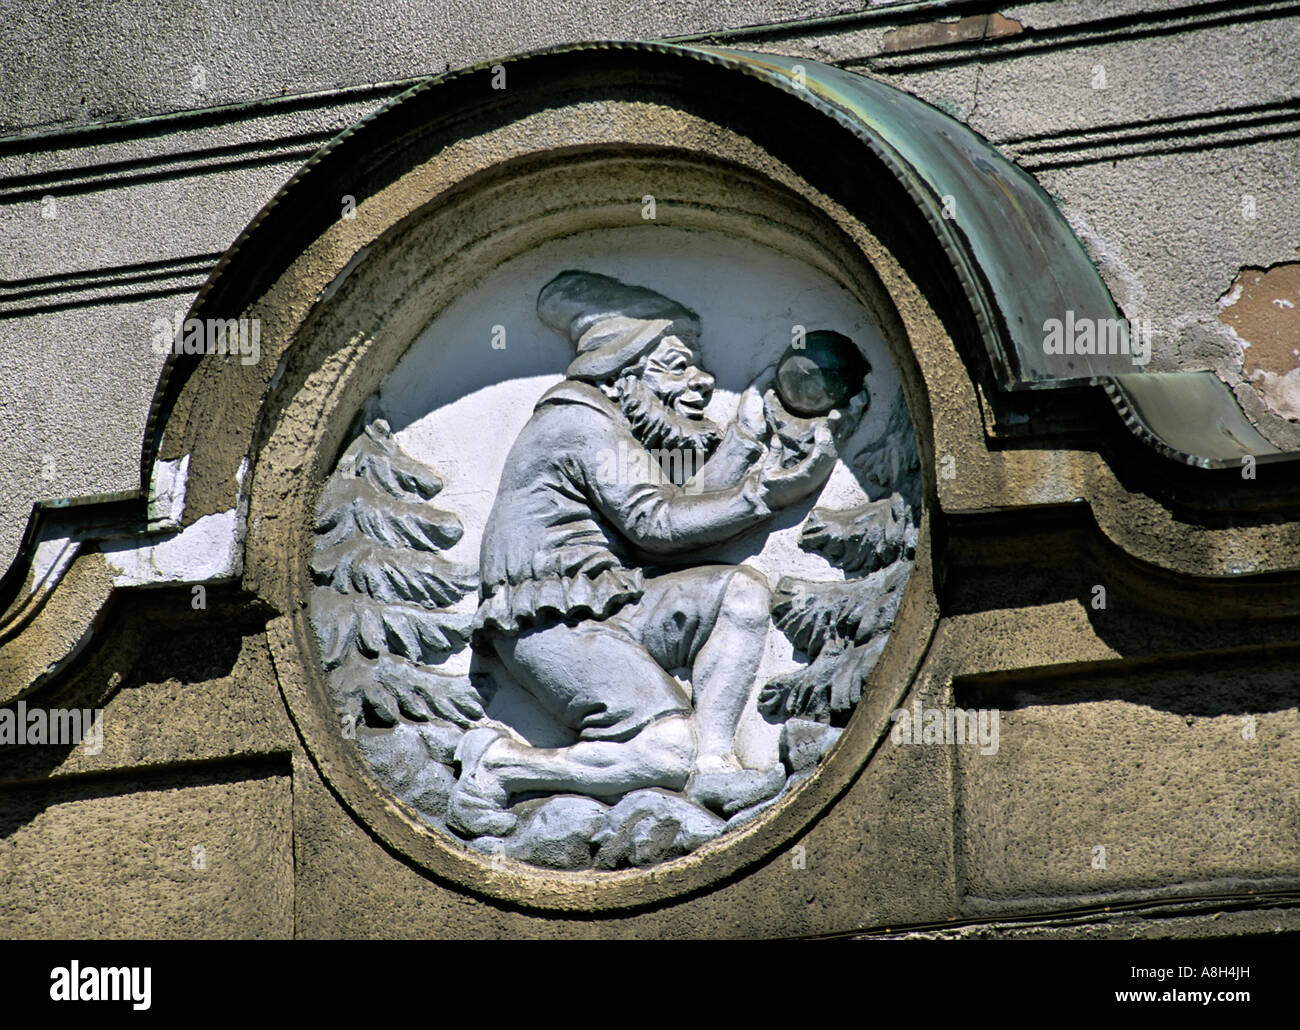 Insigne de l'exploitation minière au mineur nain légendaire porte sur la place de la République République tchèque Jachymov Banque D'Images